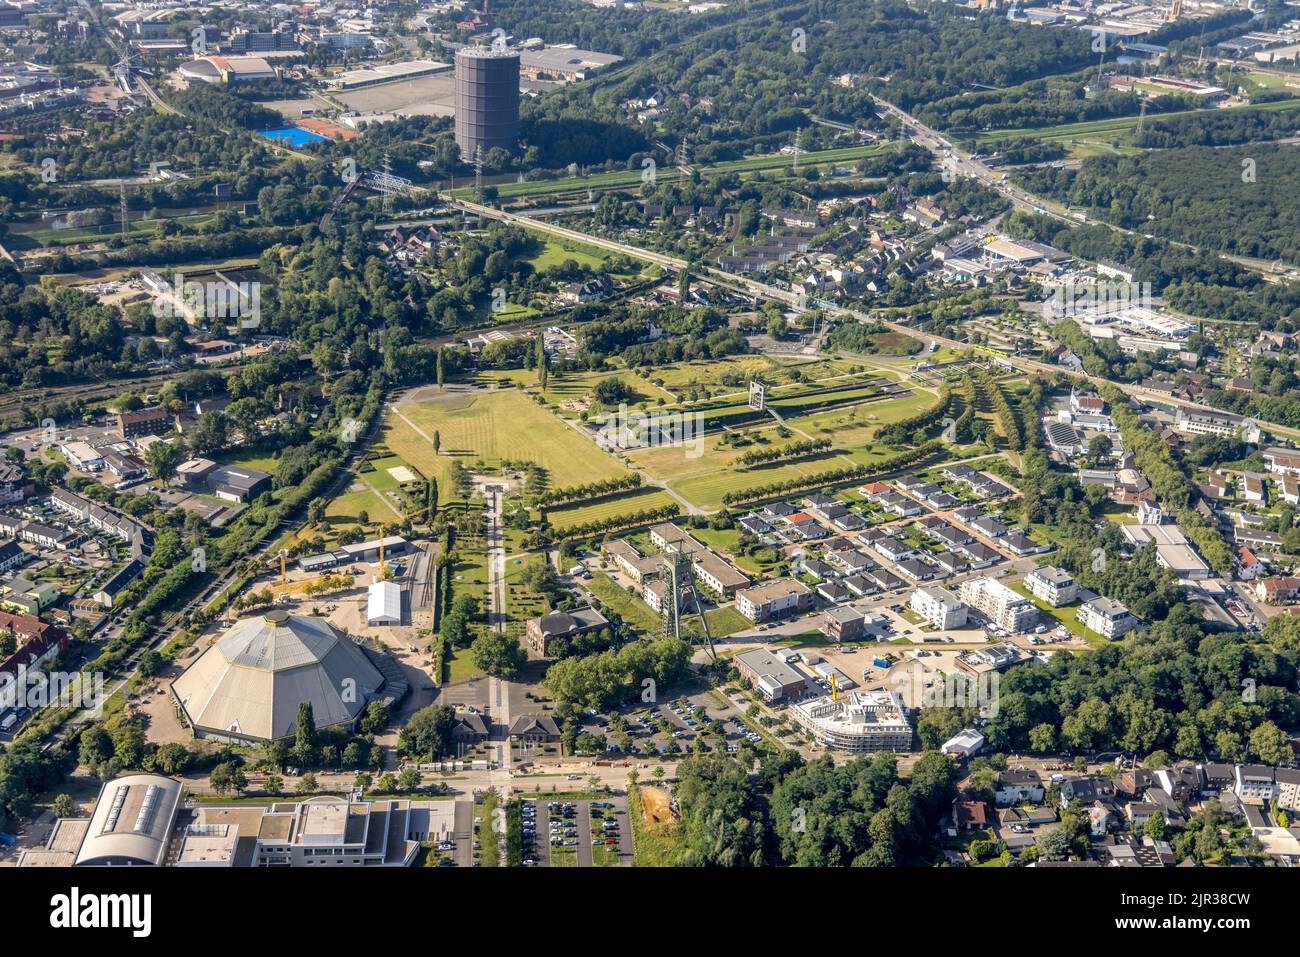 Vista aerea, OLGA Park con ASO Oberhausen residenza senior a OLGA Park, torre tortuosa e vecchia fossa oltre al giardino cattedrale di Osterfeld, OB Foto Stock